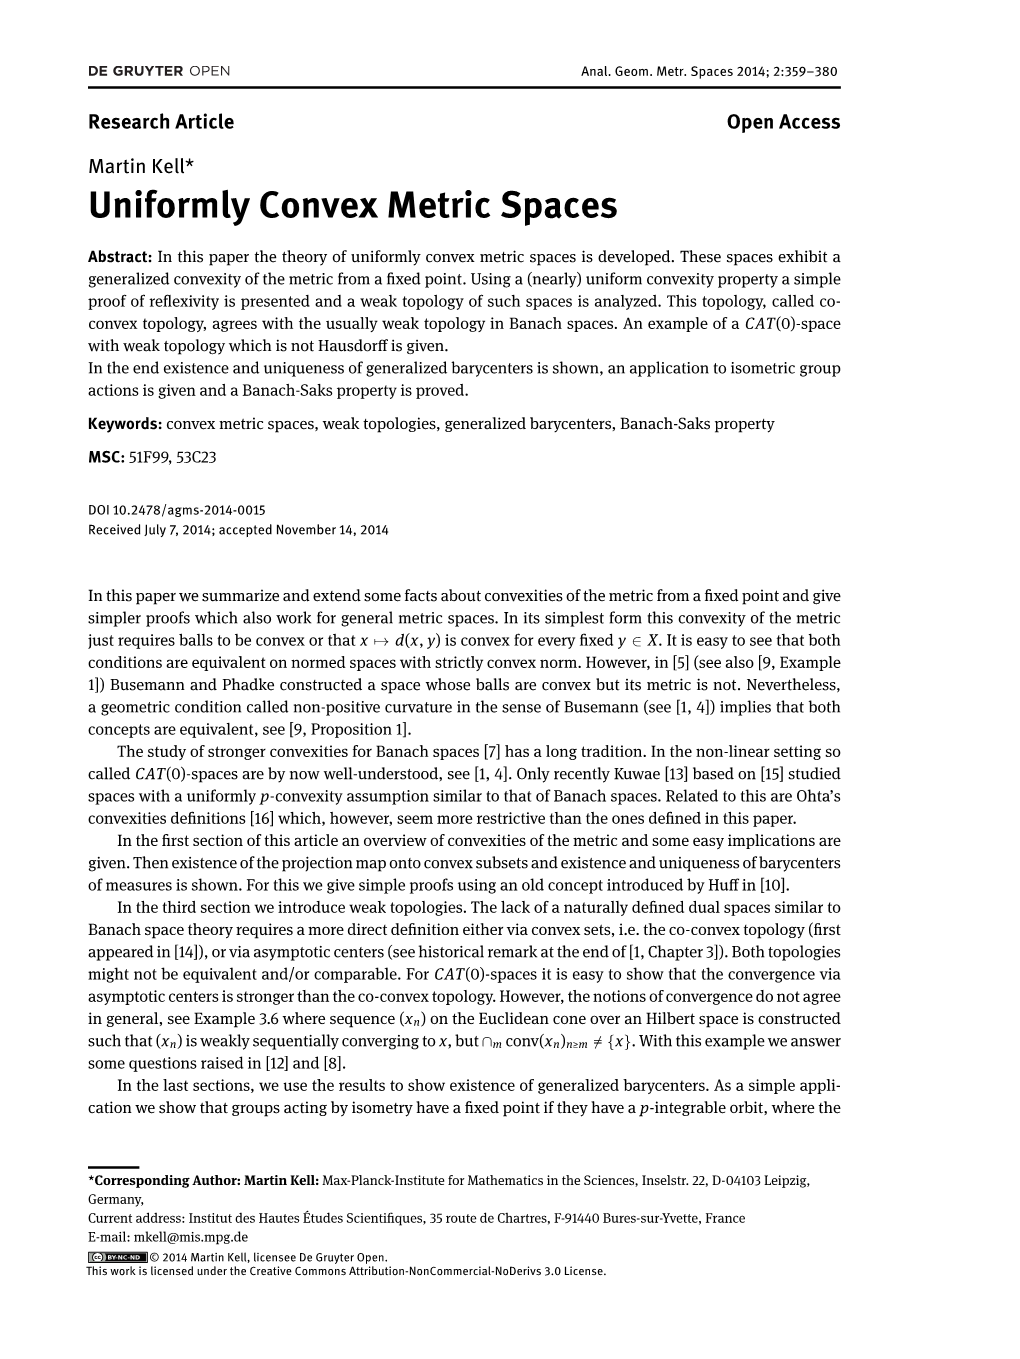 Uniformly Convex Metric Spaces